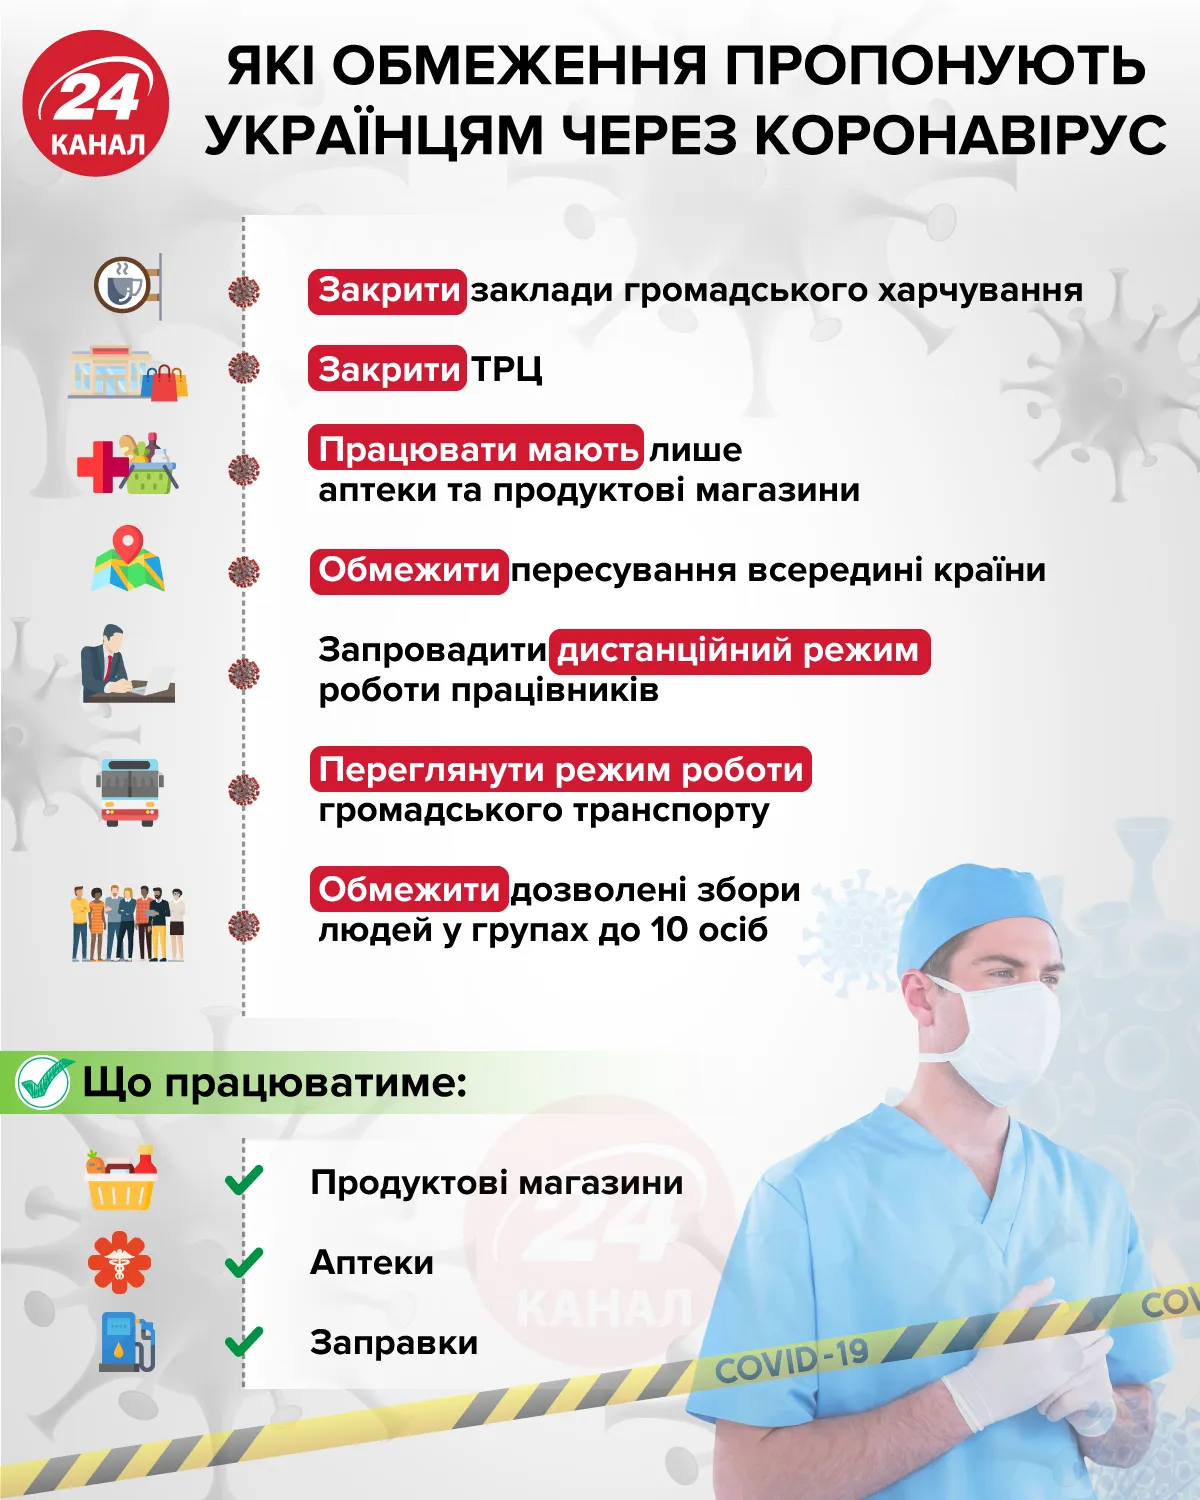 Какие ограничения предлагают украинцам через коронавирус Инфографика 24 канала